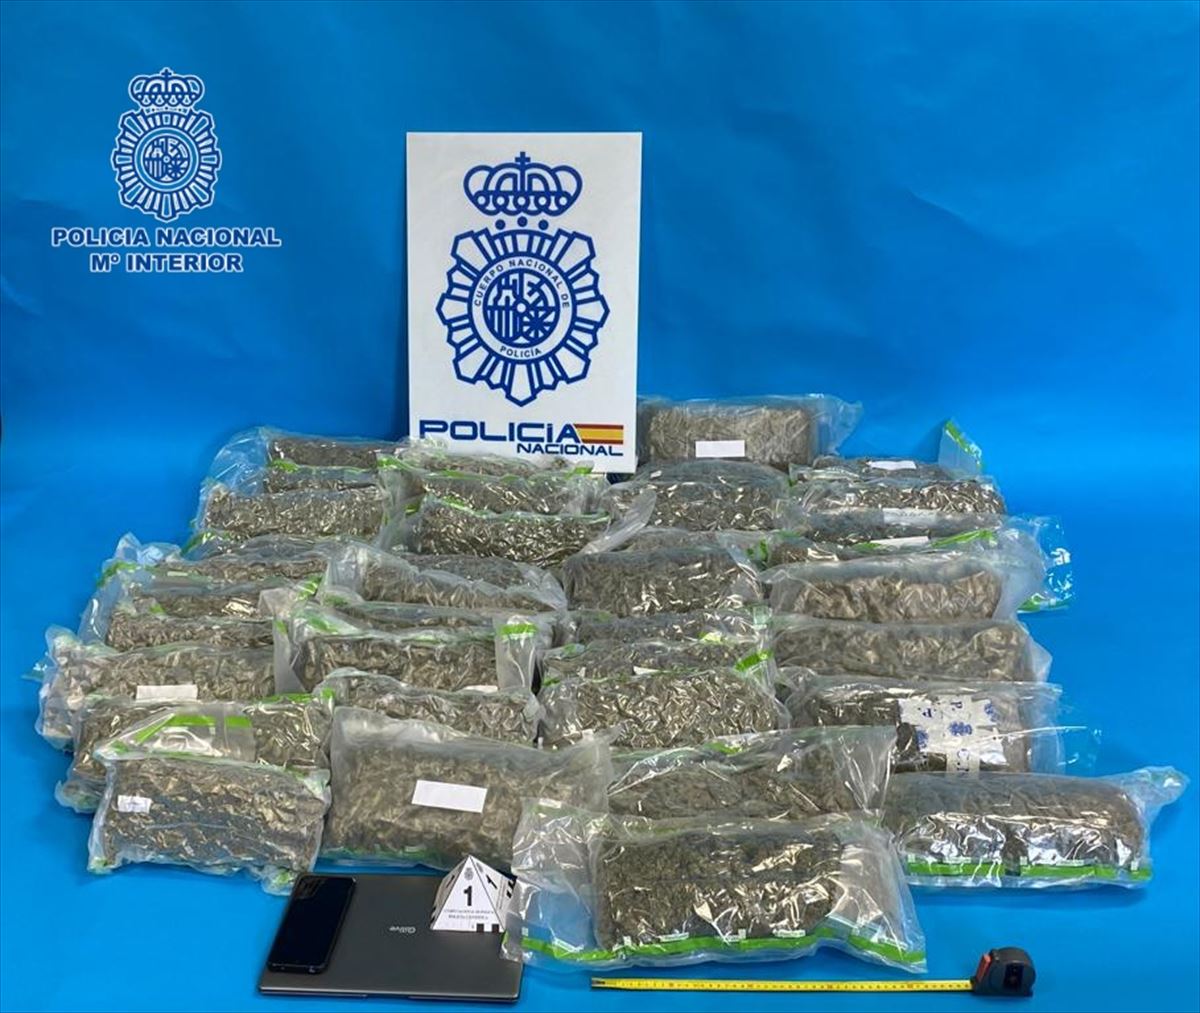 Los 19 kilos de marihuana decomisada en Irun (Gipuzkoa). Foto: Delegación del Gobierno español